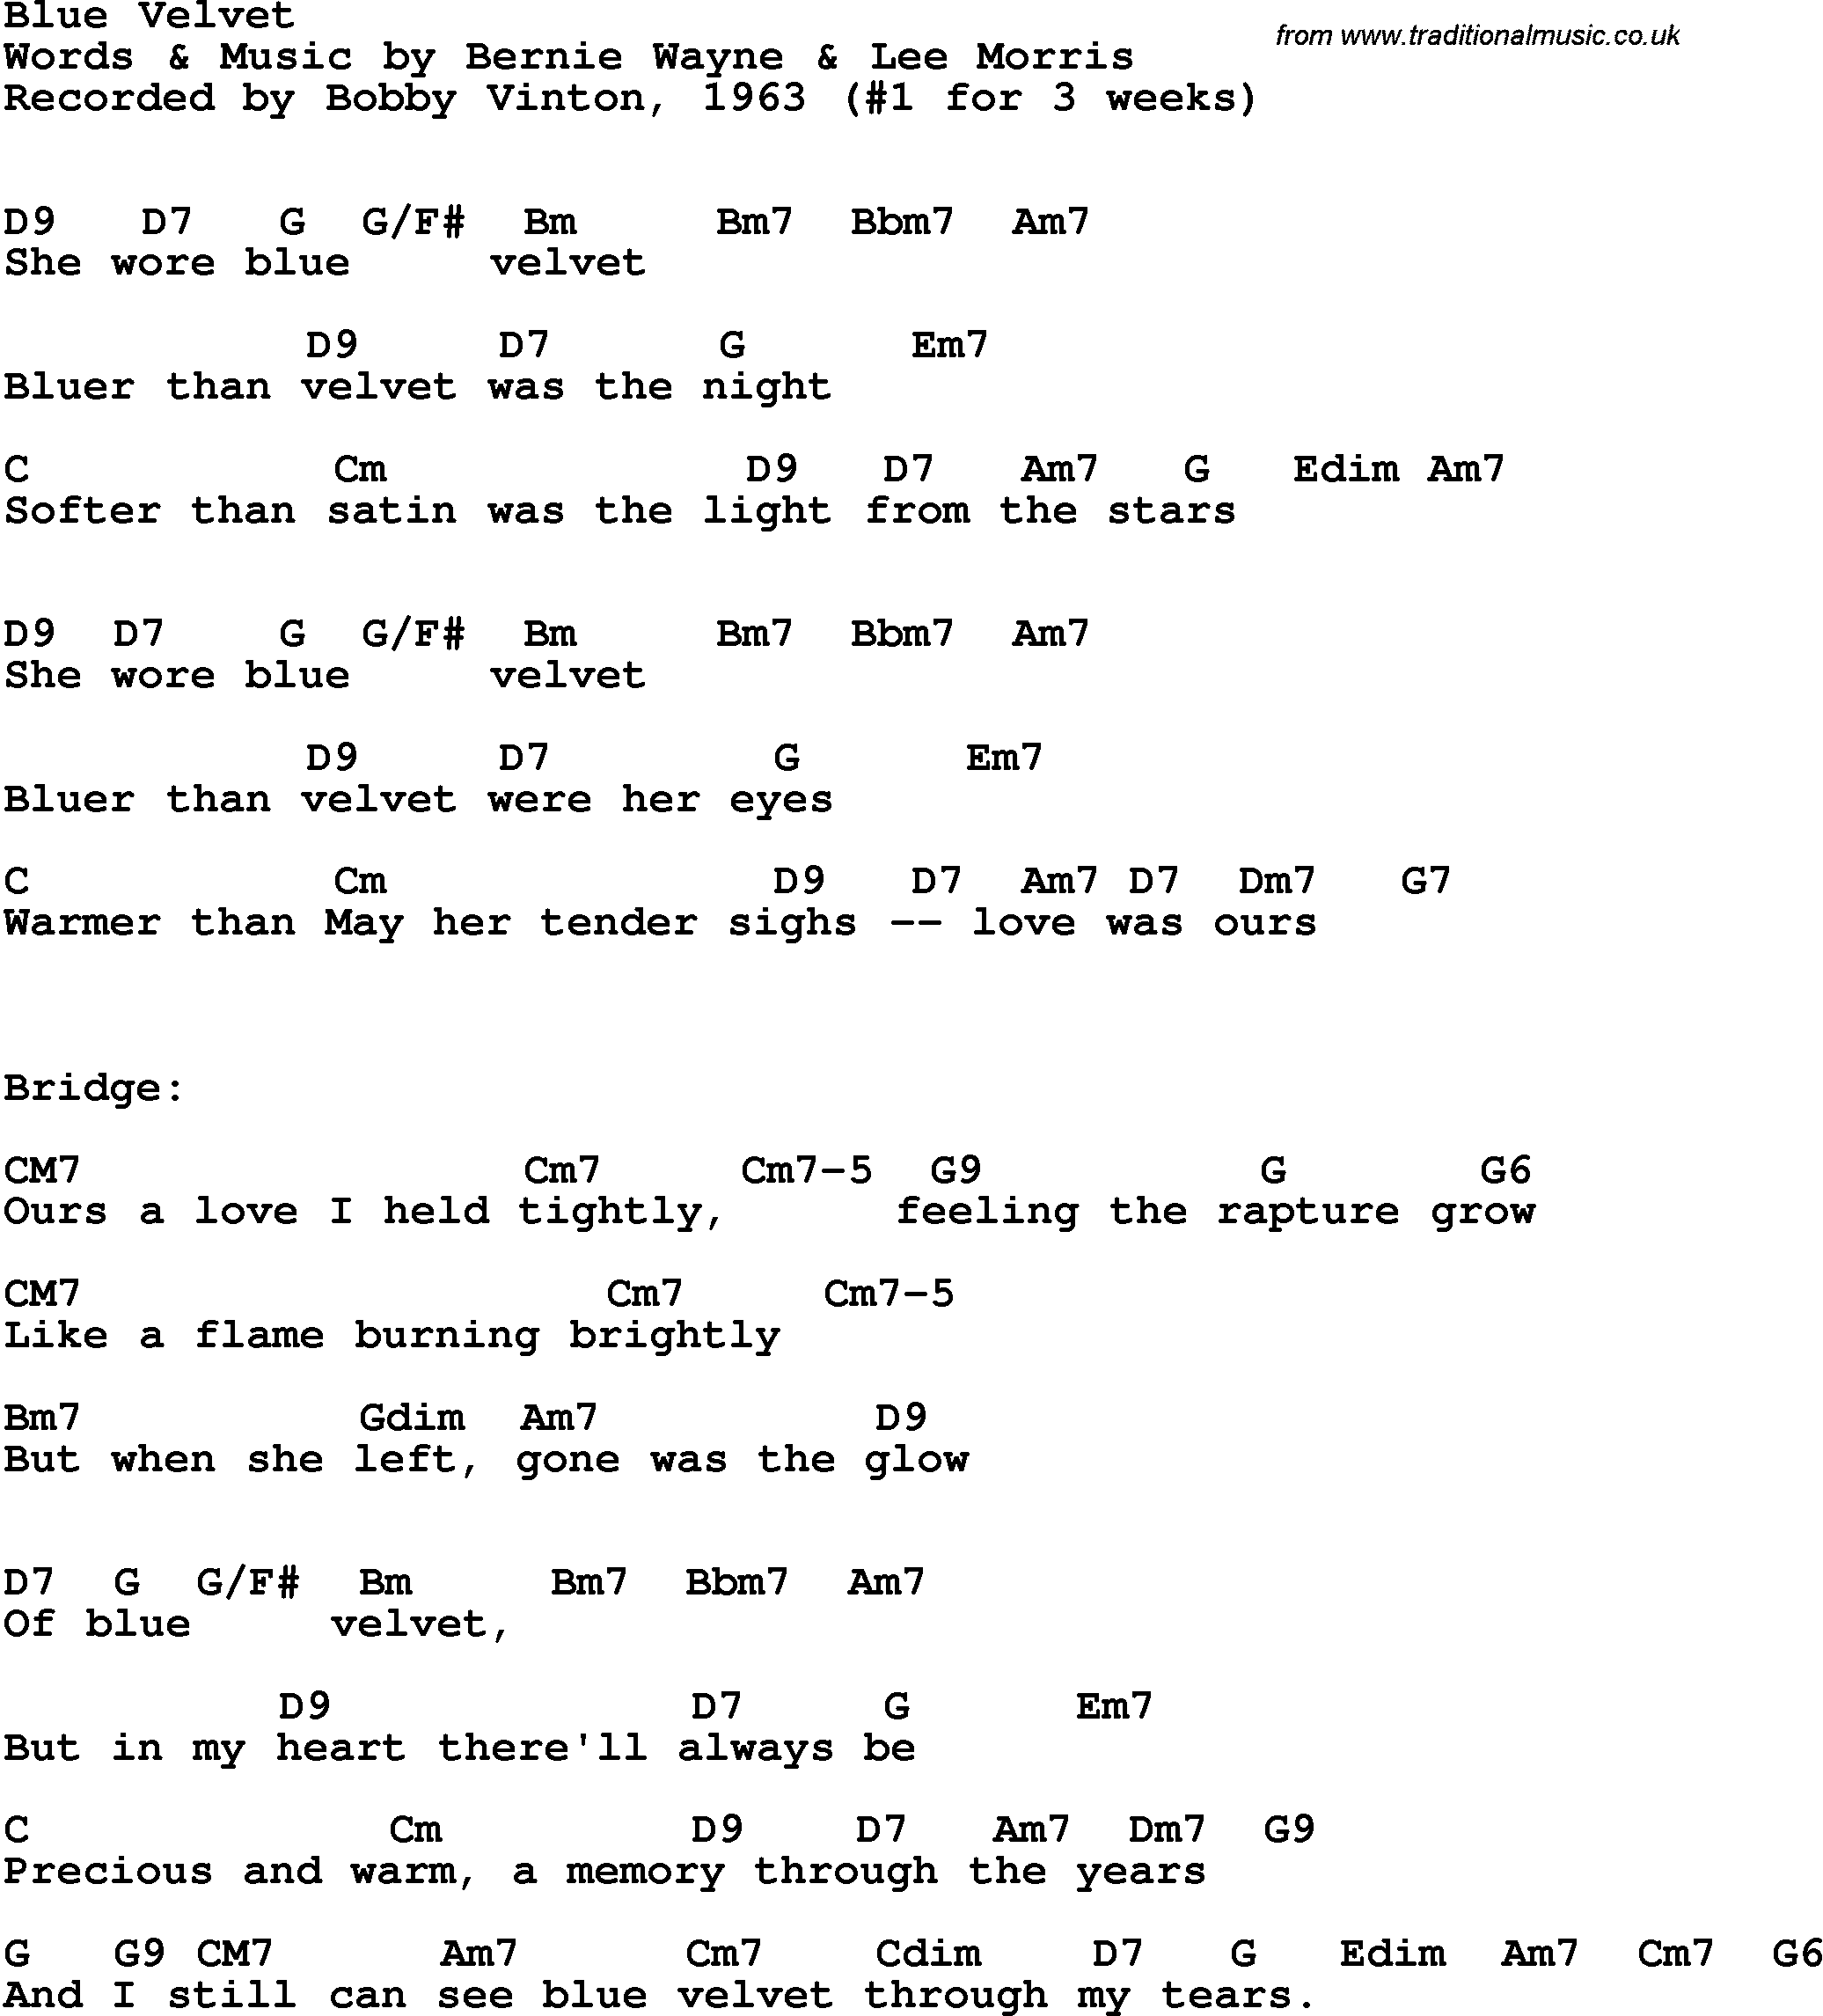 Song Lyrics with guitar chords for Blue Velvet - Bobby Vinton, 1963